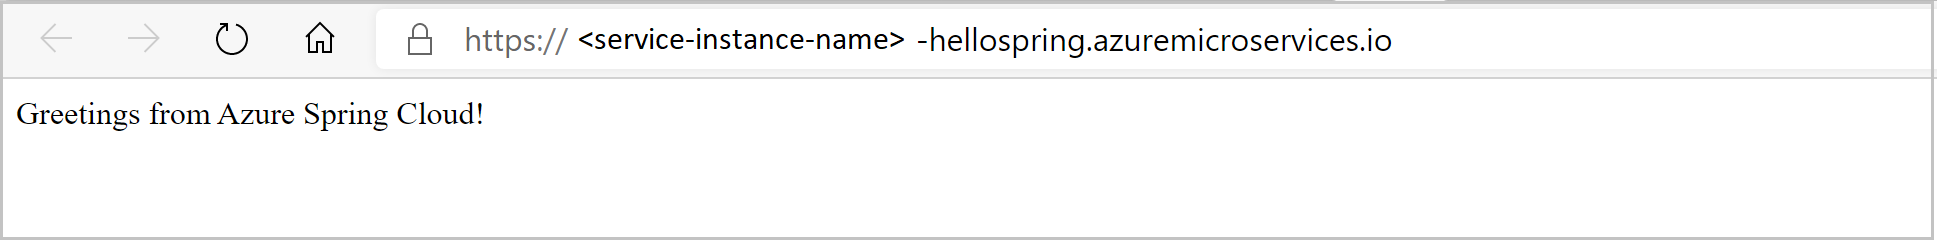 لقطة شاشة لتطبيق hello spring كما هو الحال في المتصفح.